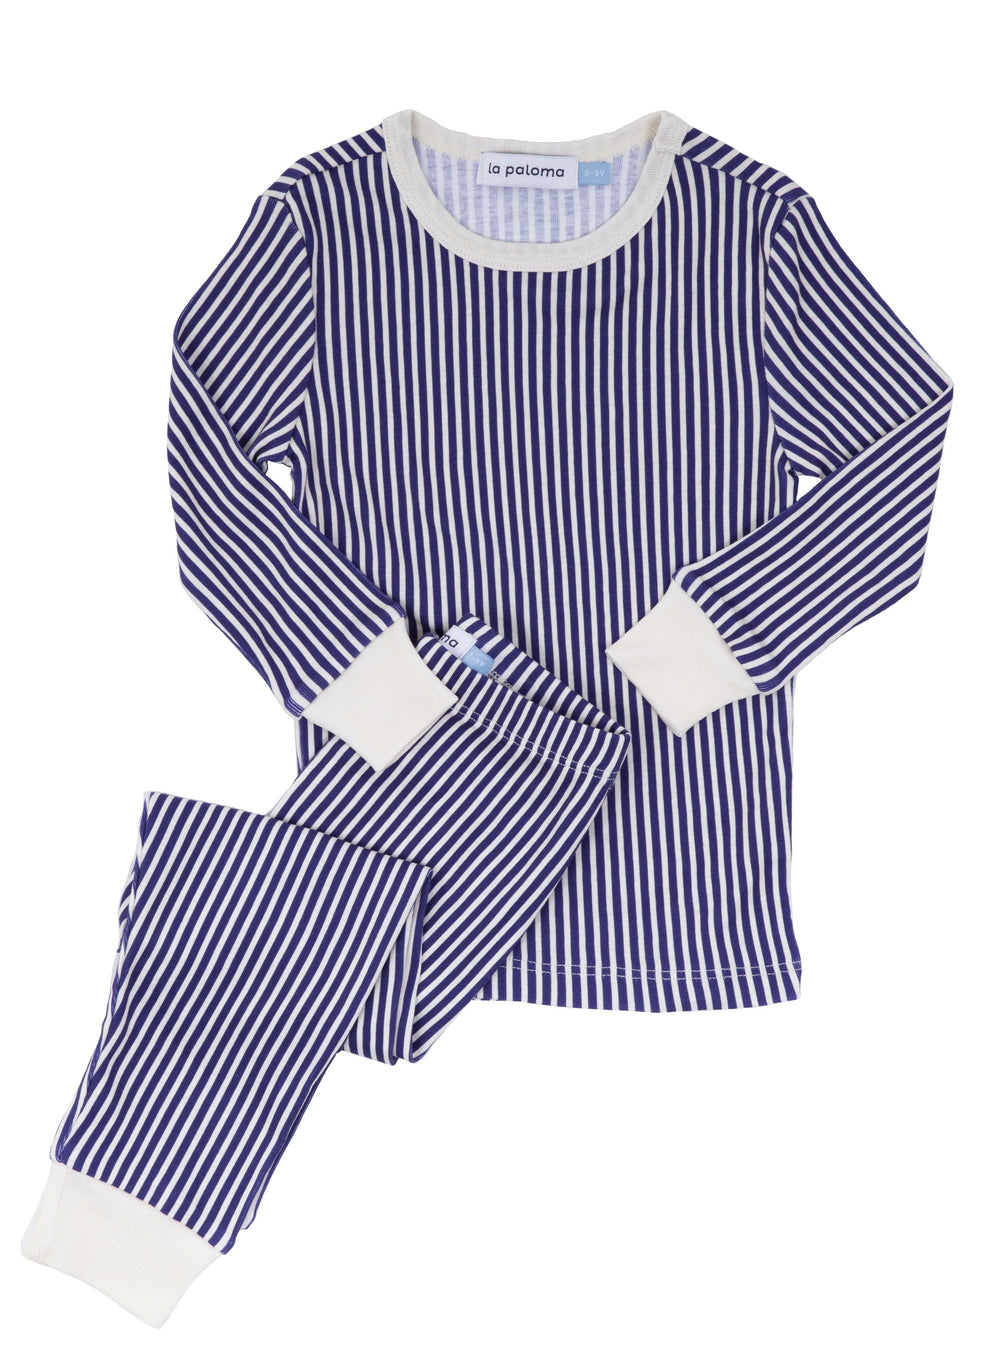 Organic Cotton Pajama Set in Navy Stripe